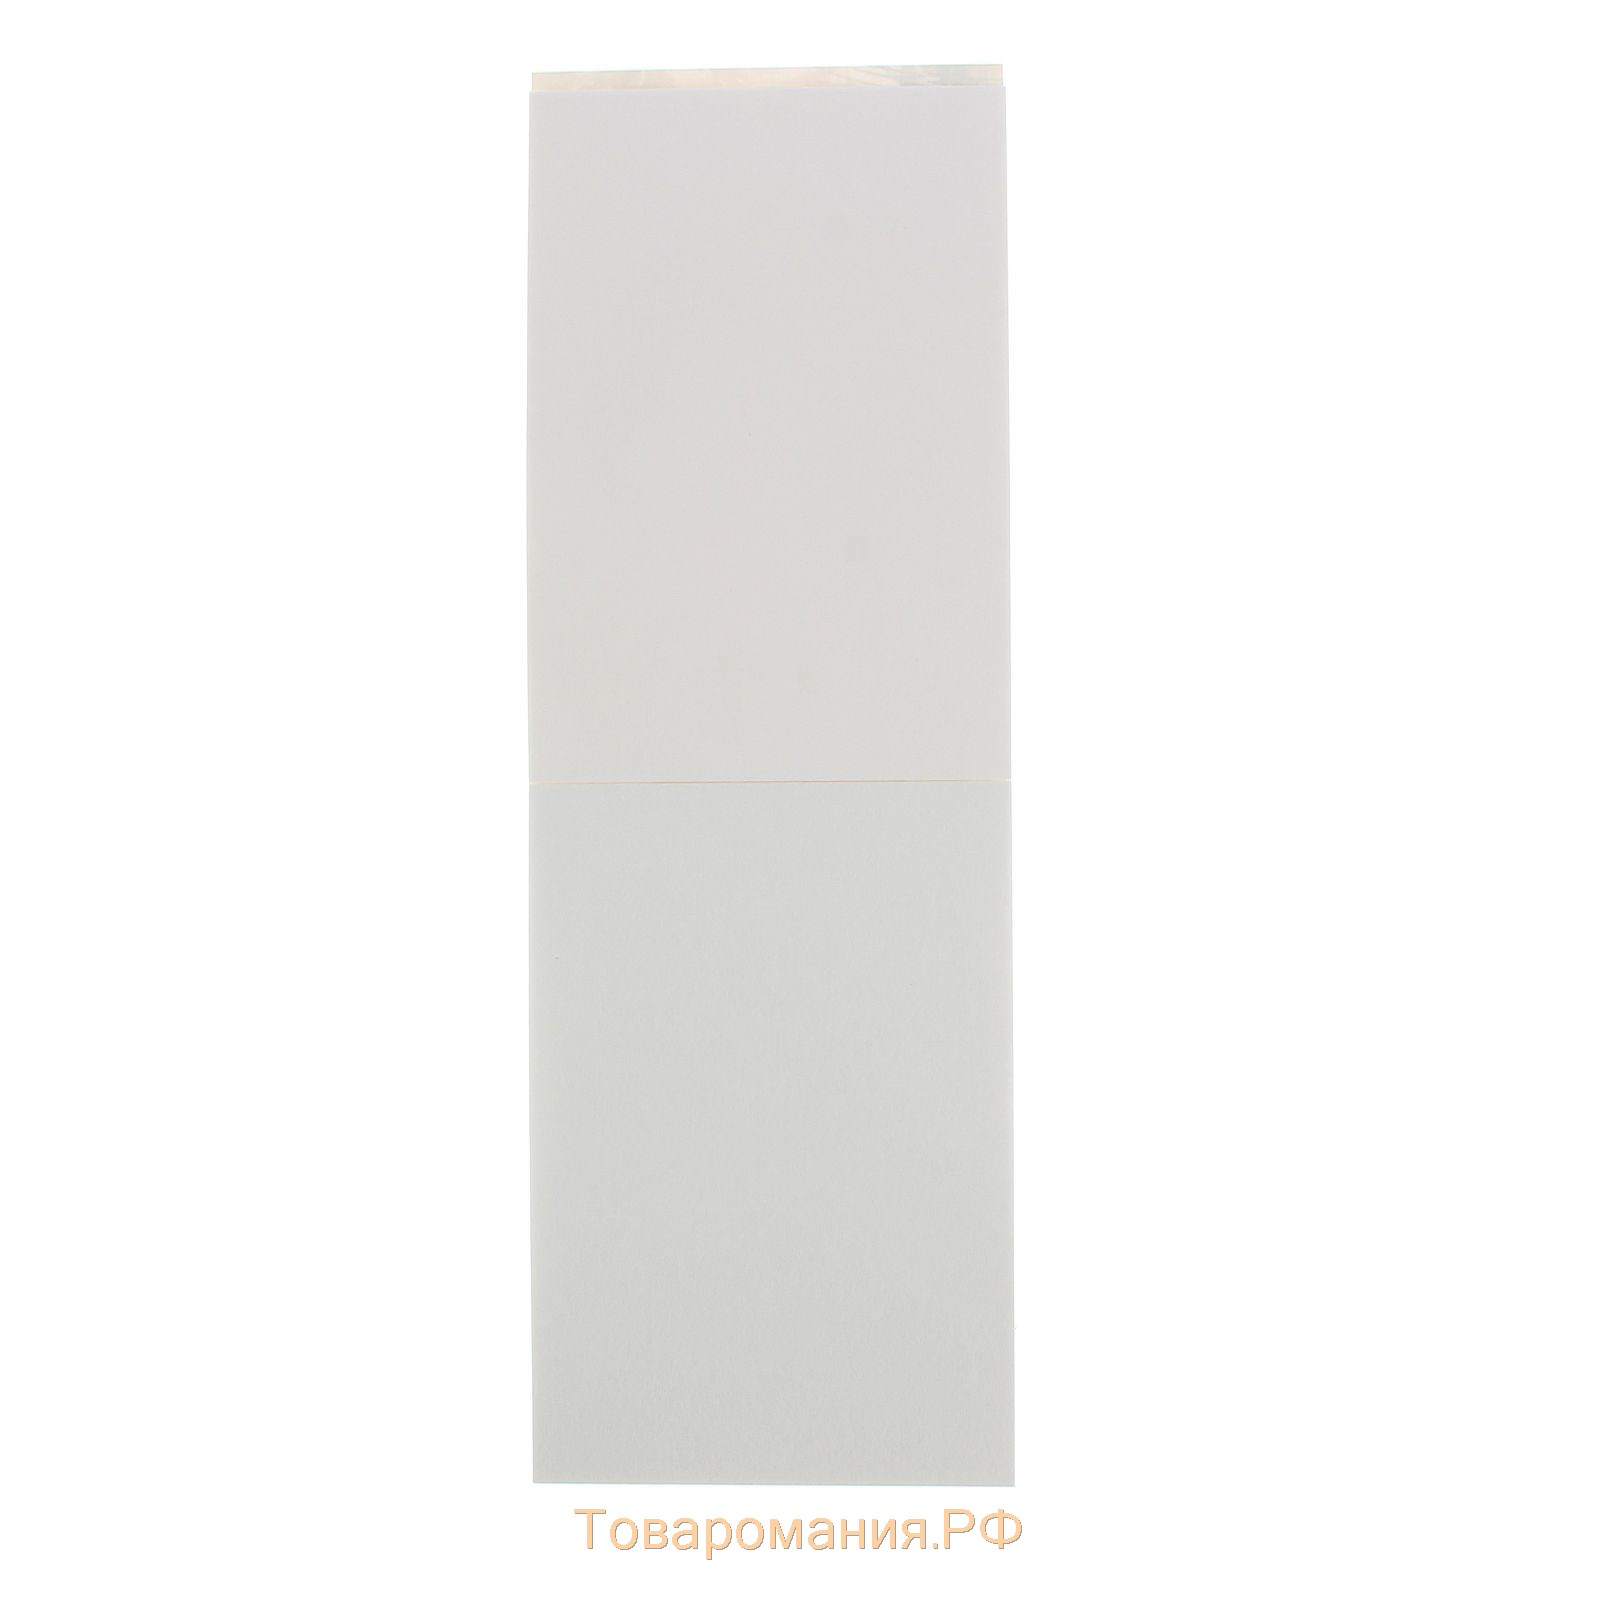 Планшет для акварели А5, 20 листов "Старый Таллин", блок 200 г/м²